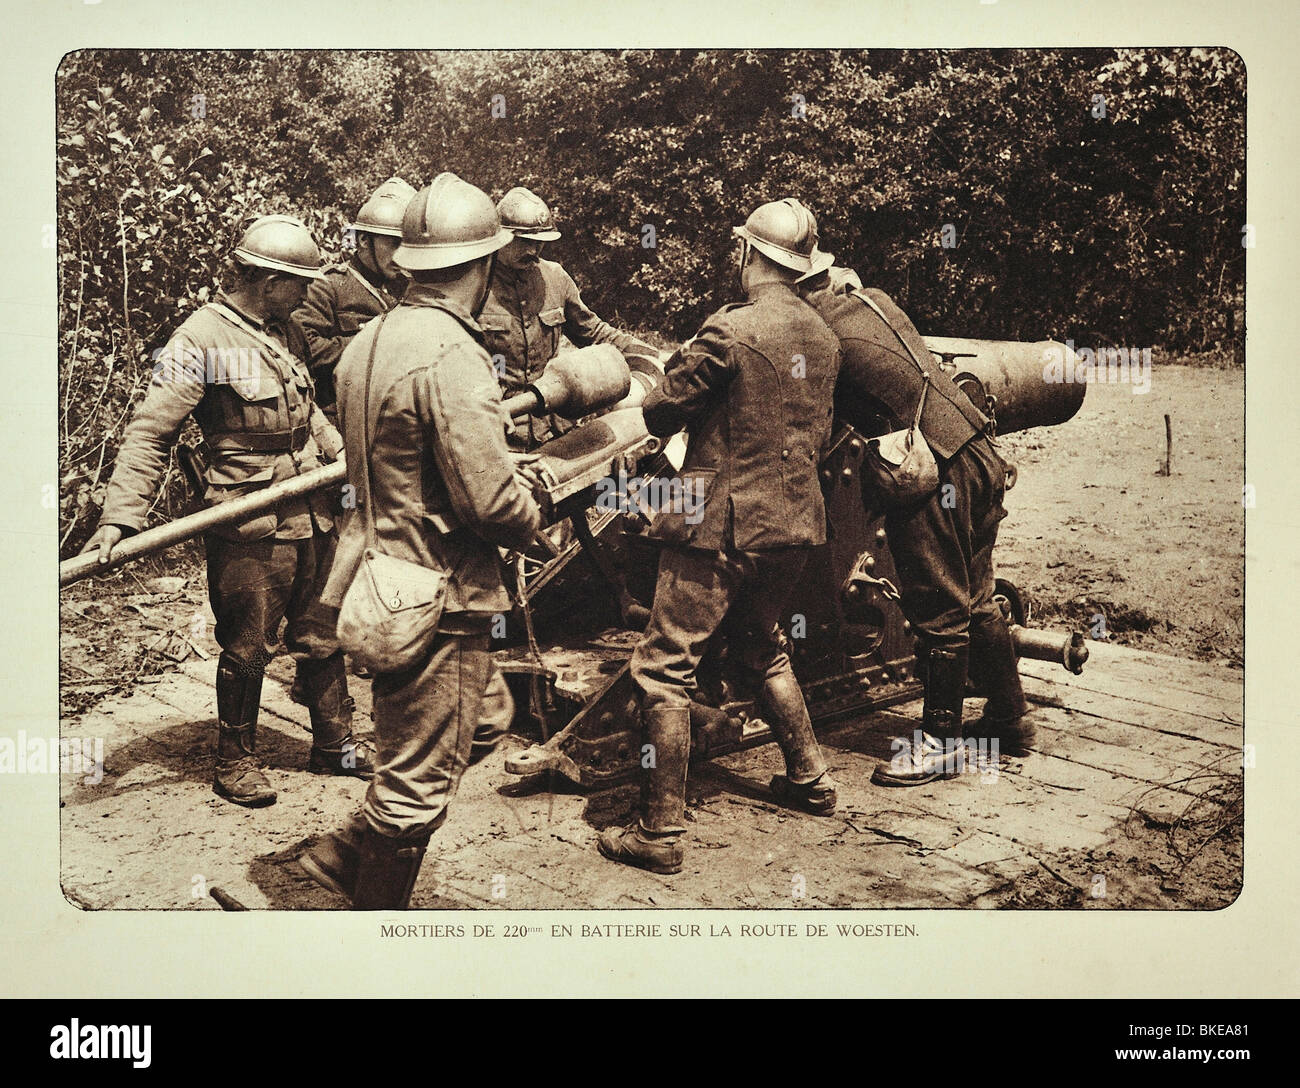 La première guerre mondiale, les soldats de l'artillerie à canon / mortier tir bataille à Woesten en Flandre occidentale pendant la Première Guerre mondiale, la Belgique Banque D'Images